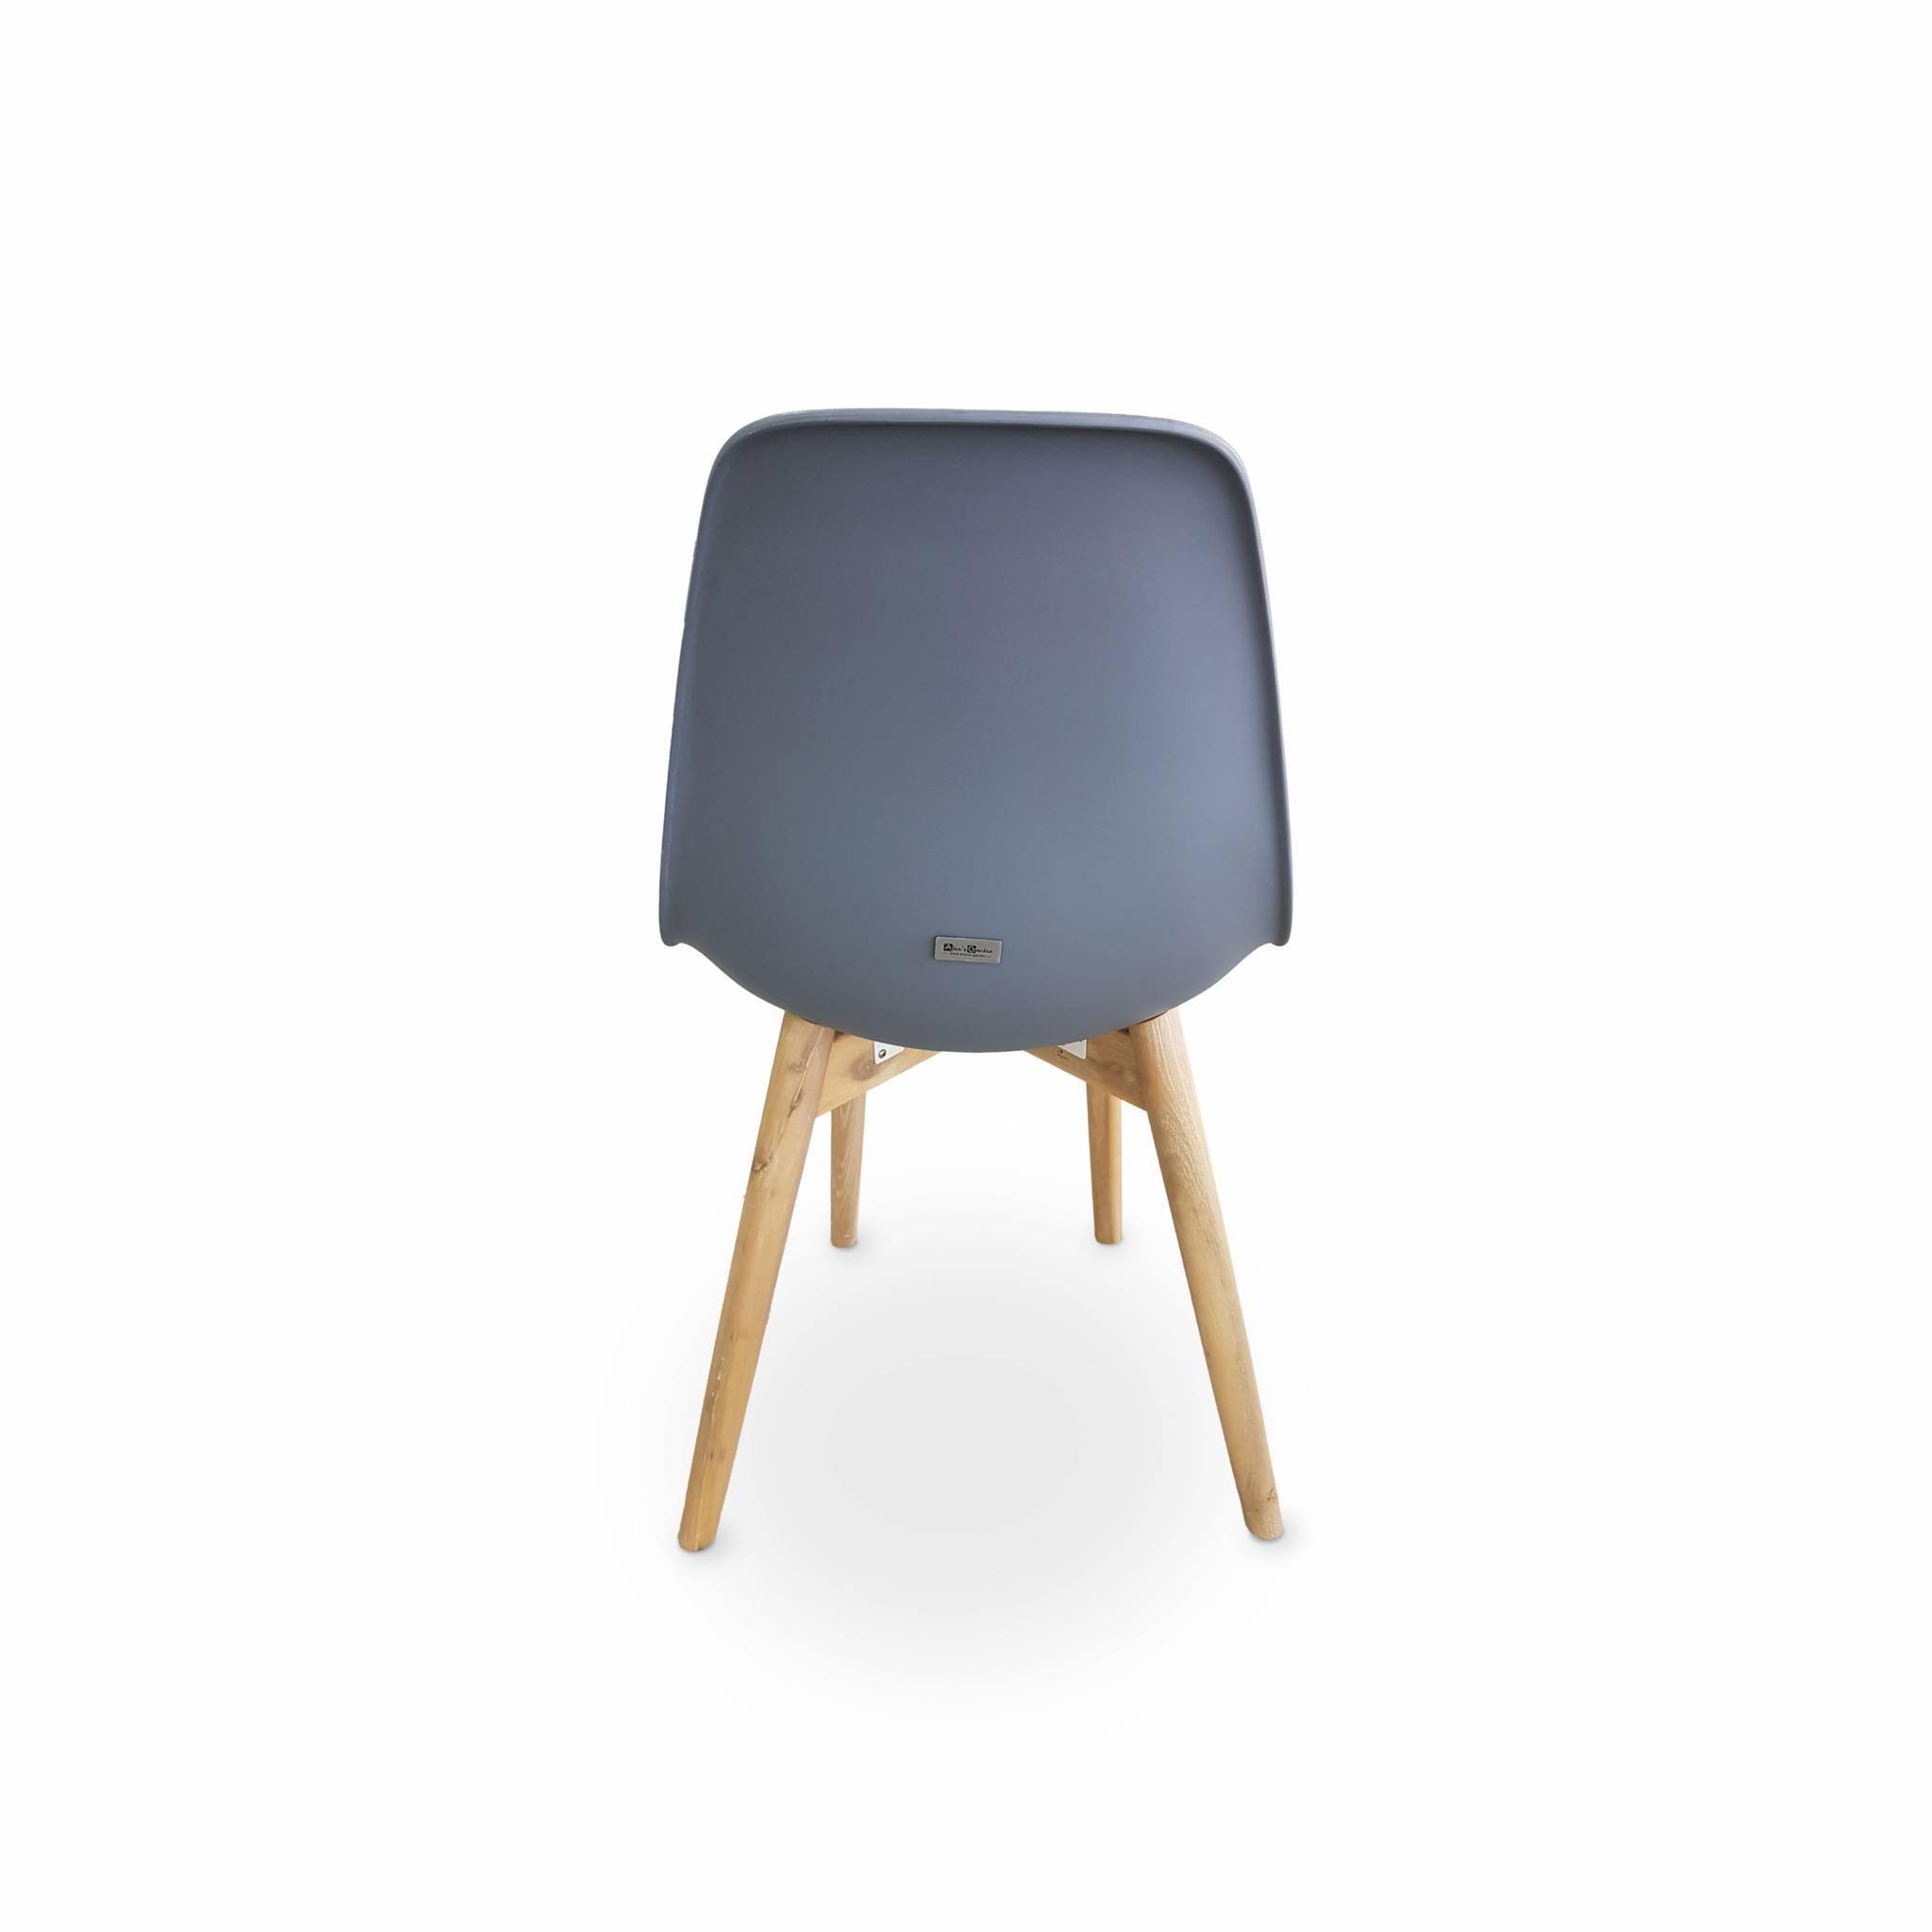 2er Set skandinavische Stühle Penida, aus Akazienholz und anthrazitfarbenem Kunstharz gespritzt, innen/außen Photo3